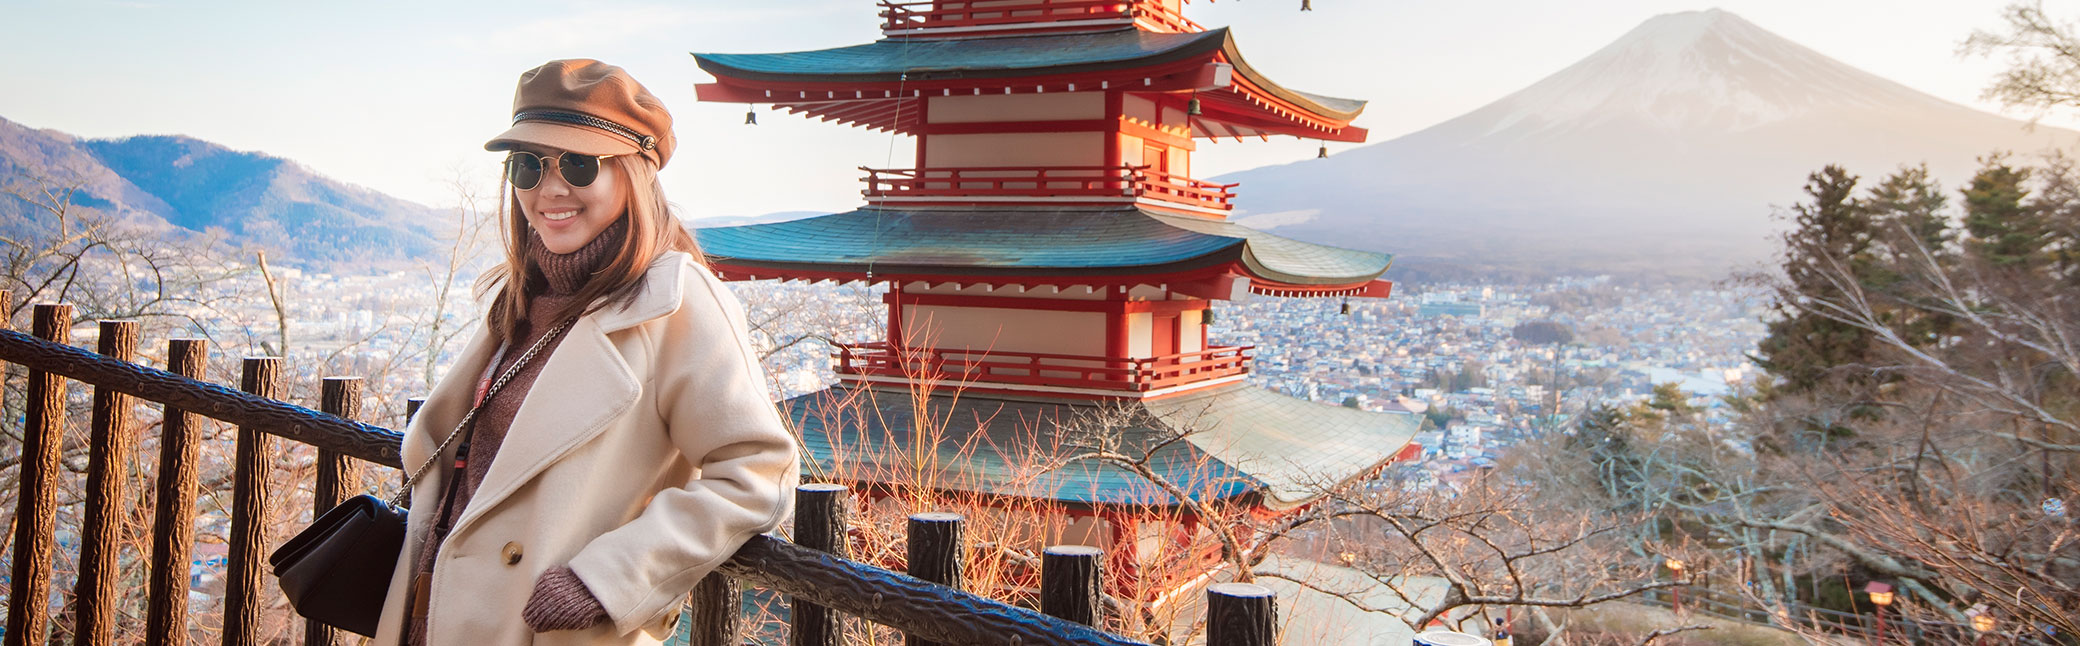 9 พิกัดที่ต้องไปเที่ยวในญี่ปุ่นให้ได้ ไปแล้วยังไงก็ฟิน